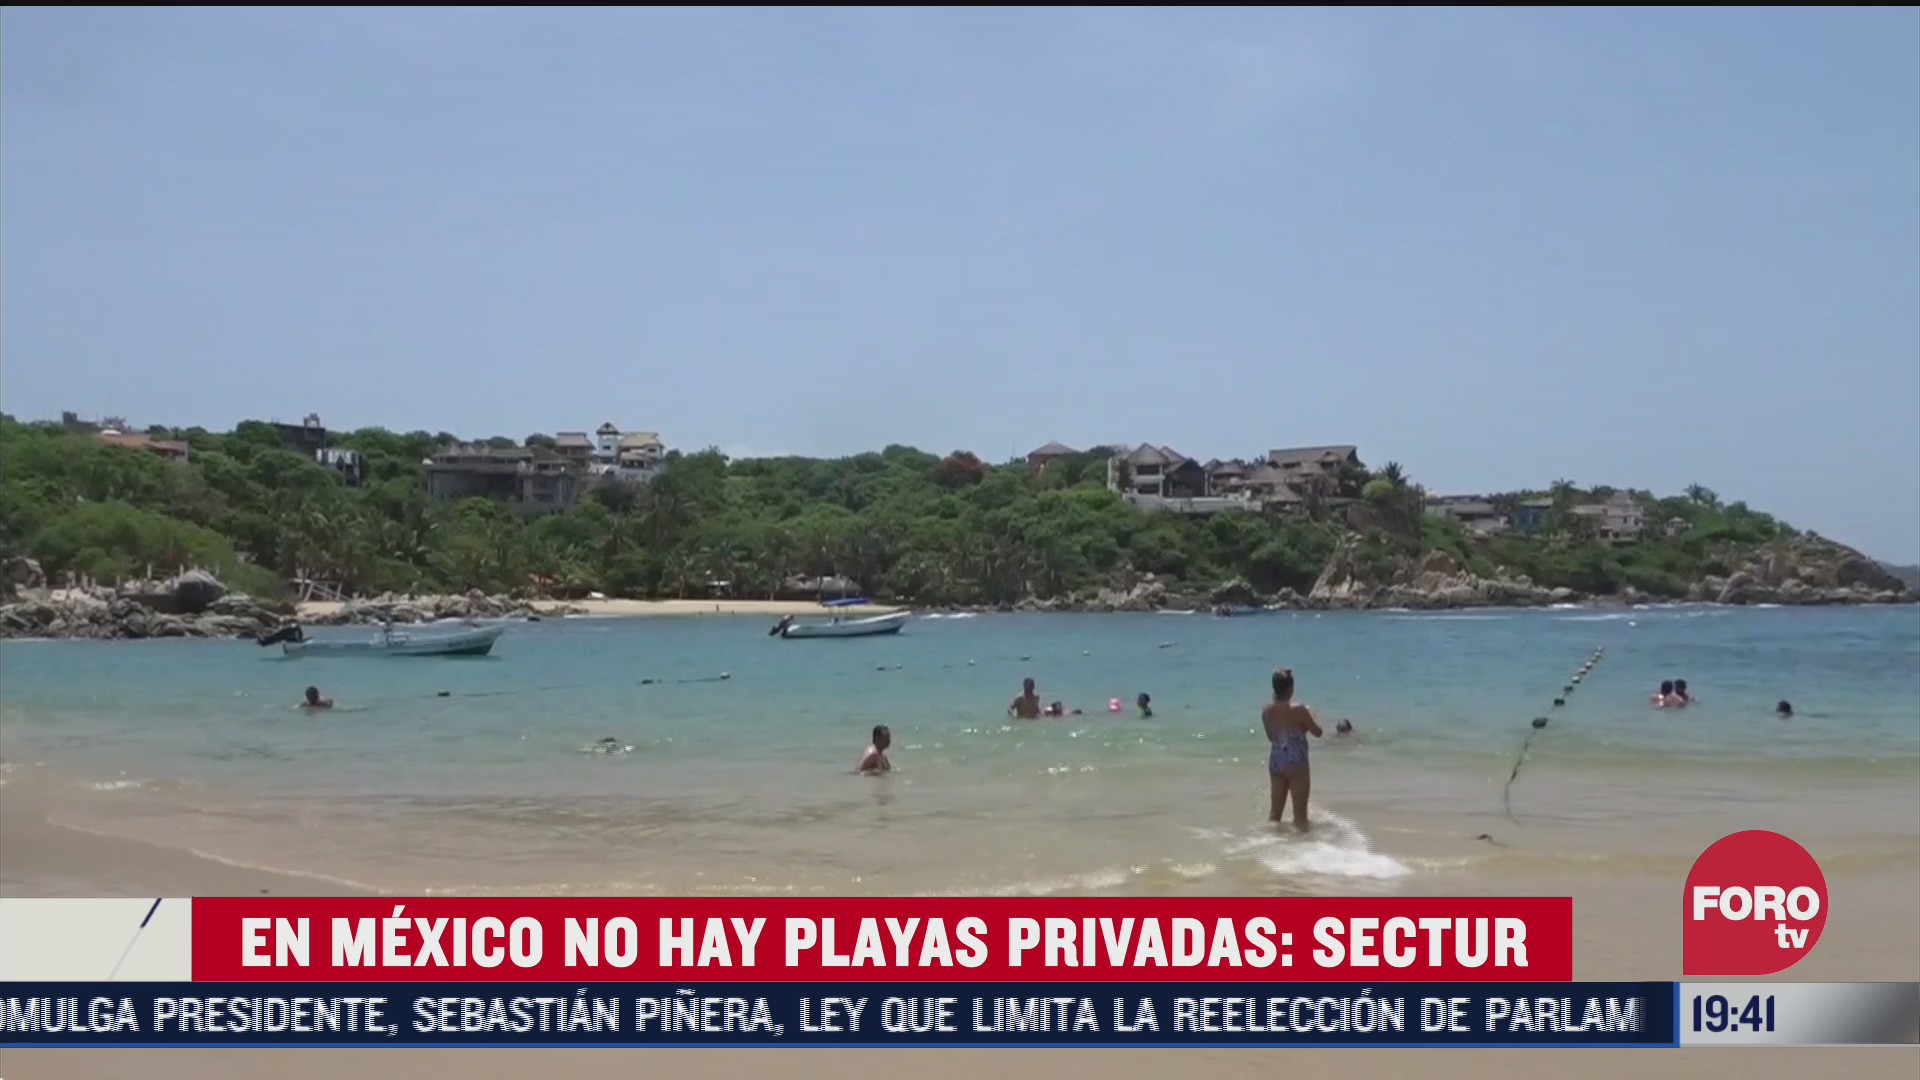 Secretaria de turismo anuncia que no hay playas privadas en México